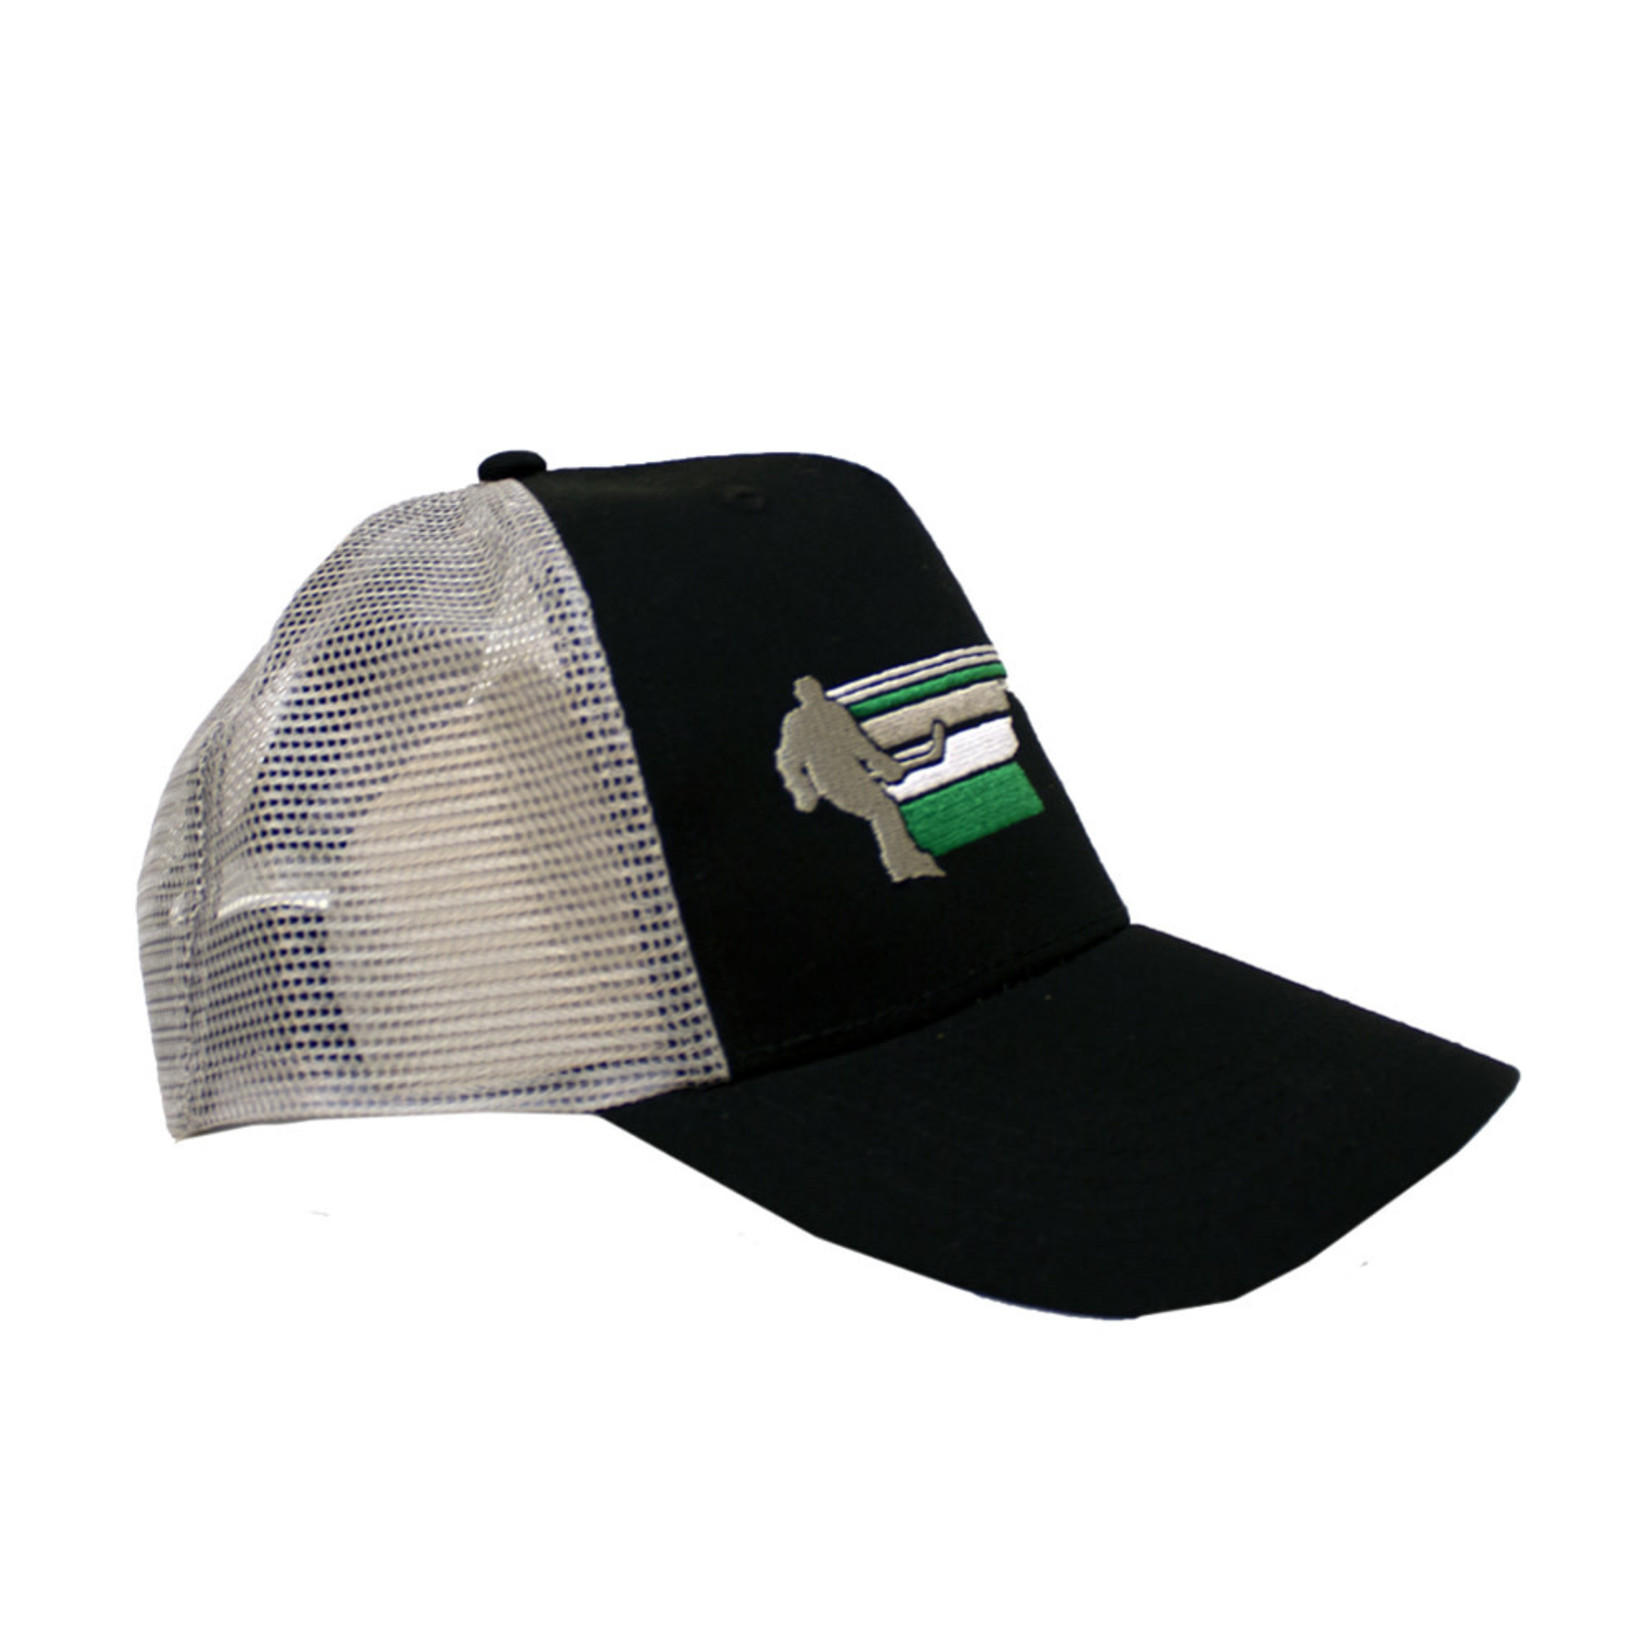 The Ralph Hockey Horizon Hat